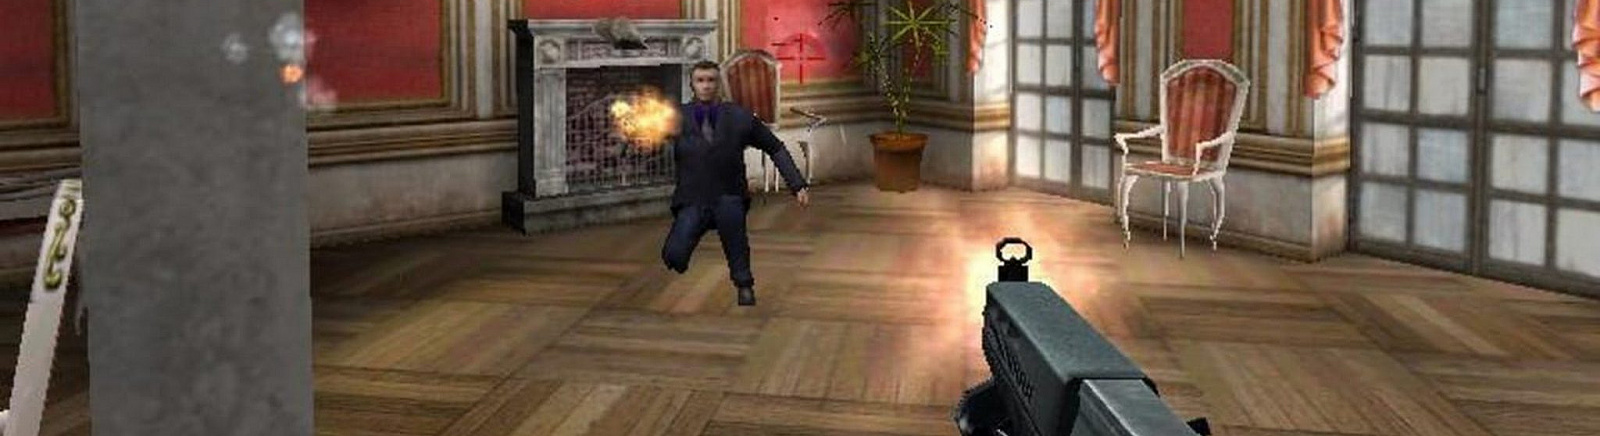 Дата выхода Sniper: Path of Vengeance  на PC в России и во всем мире